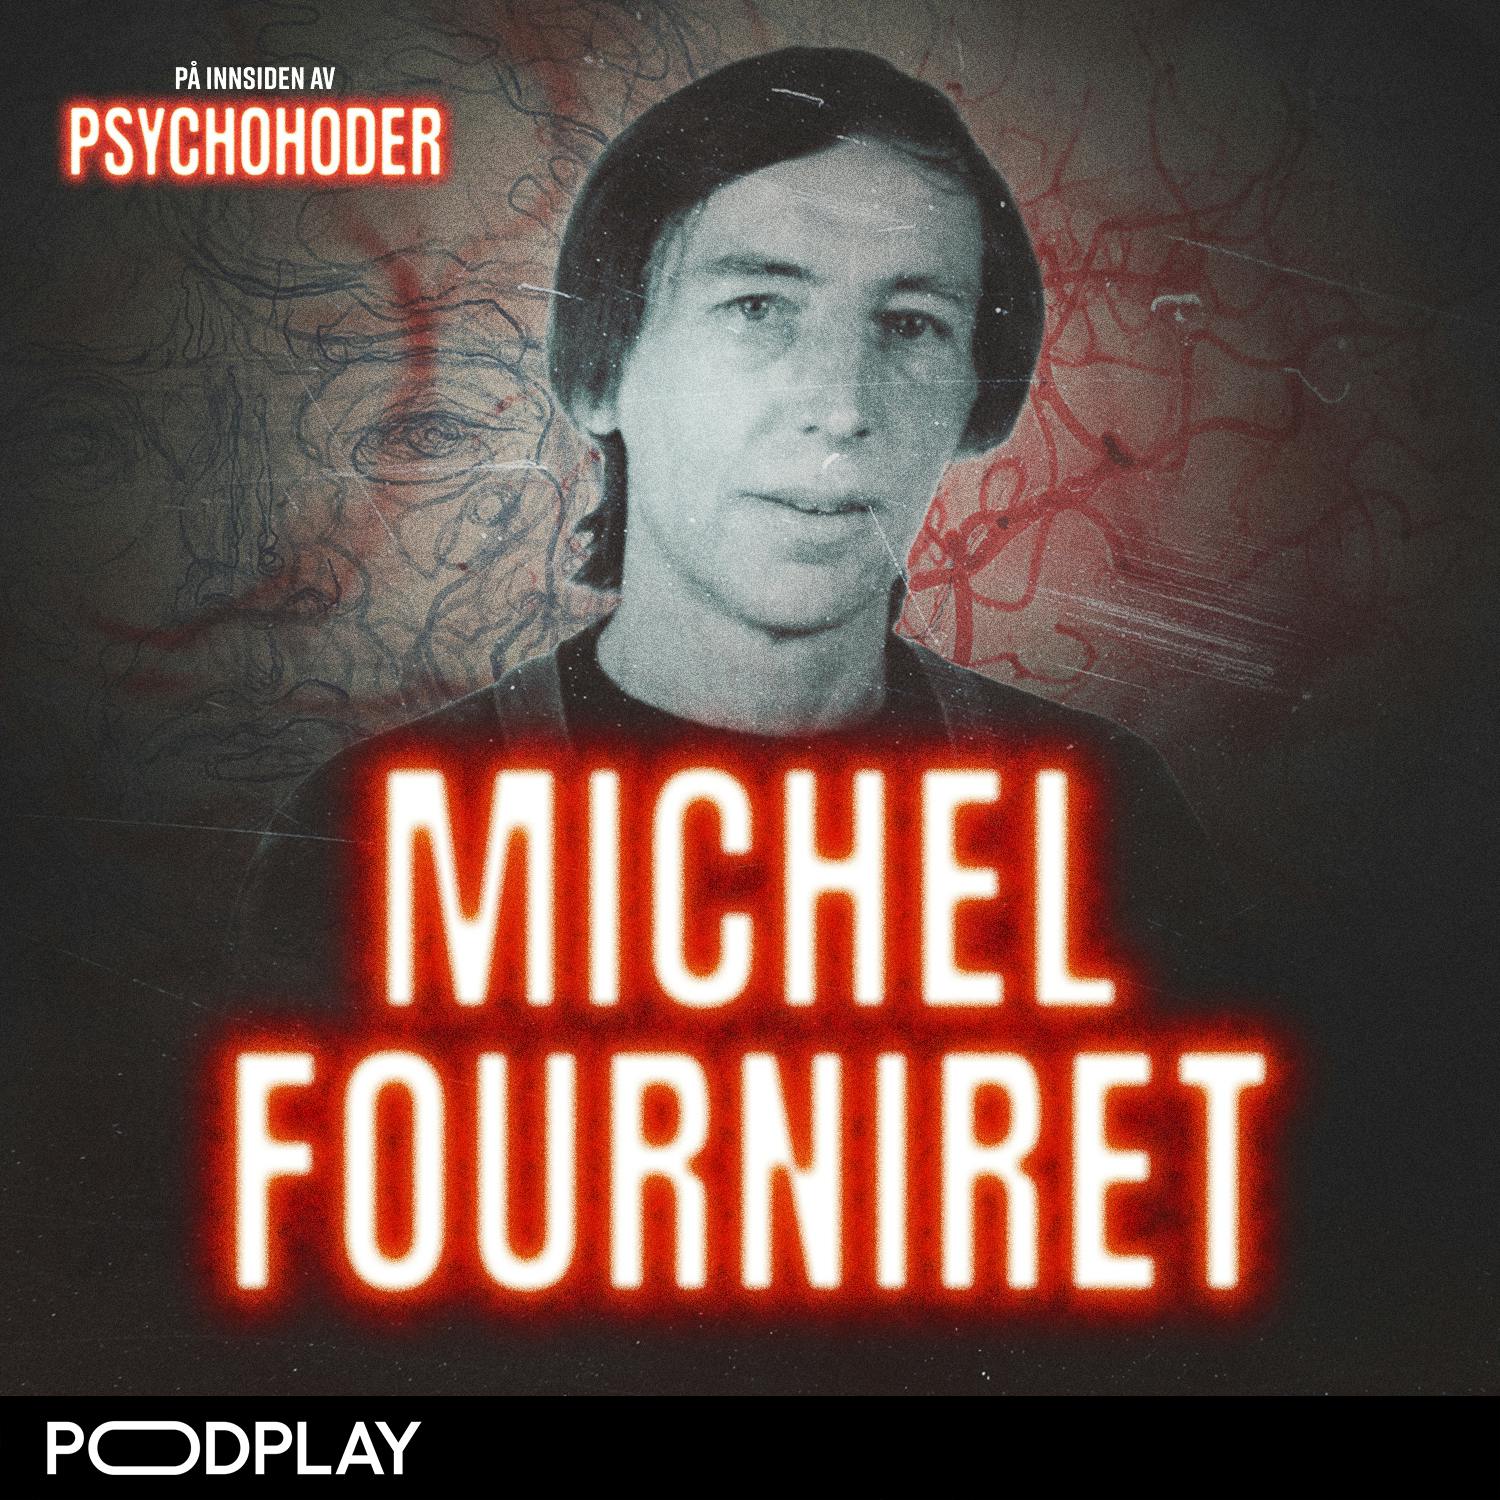 Michael Fourniret - voldtok og drepte jomfruer sammen med sin kone